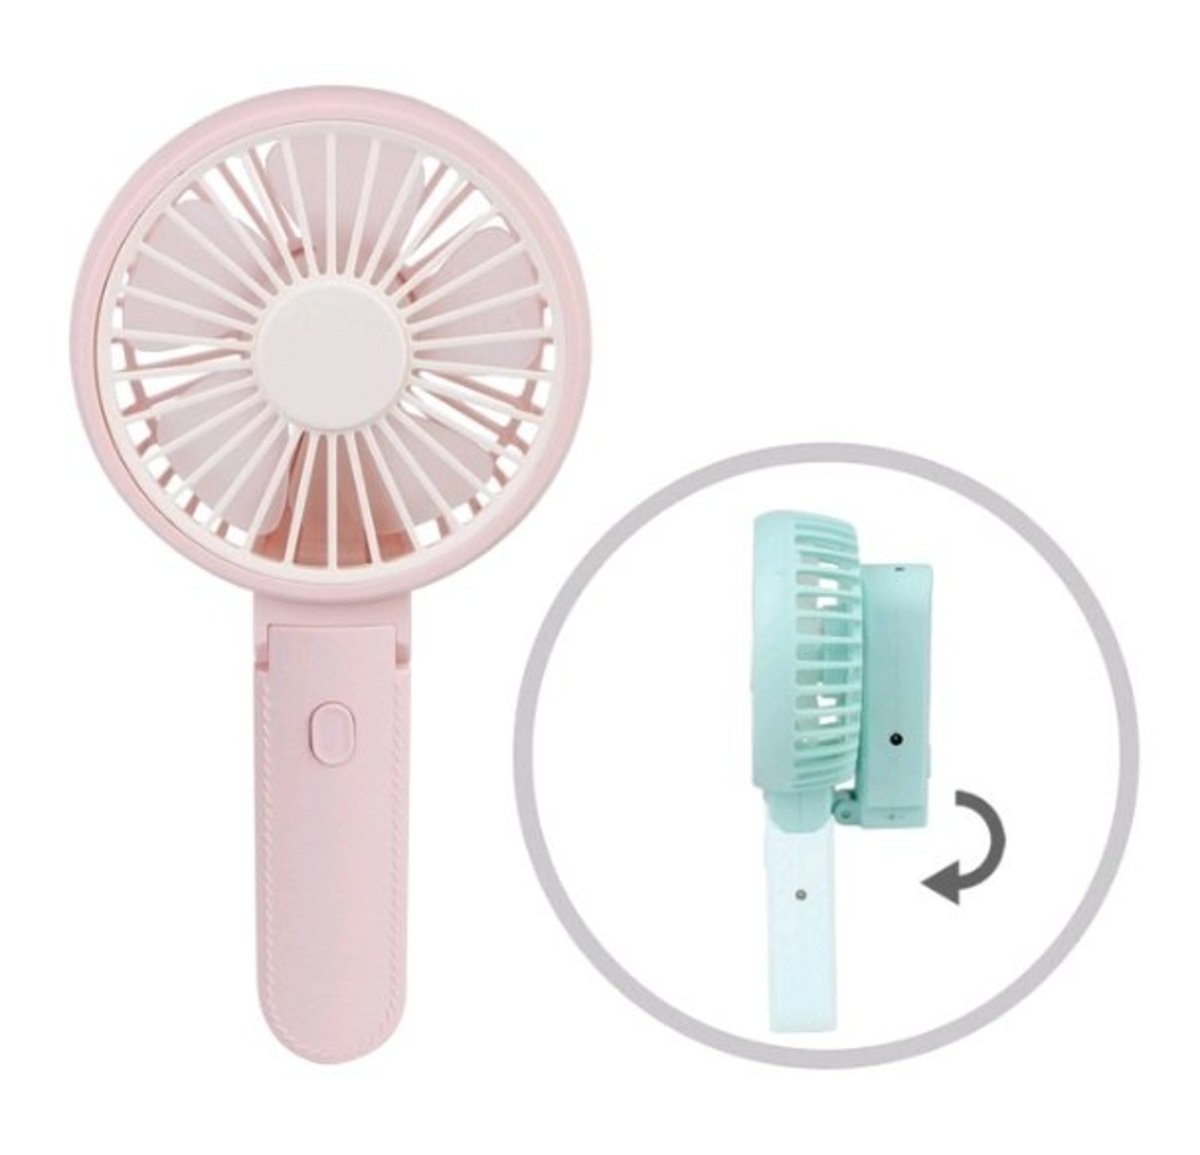 pink electric fan